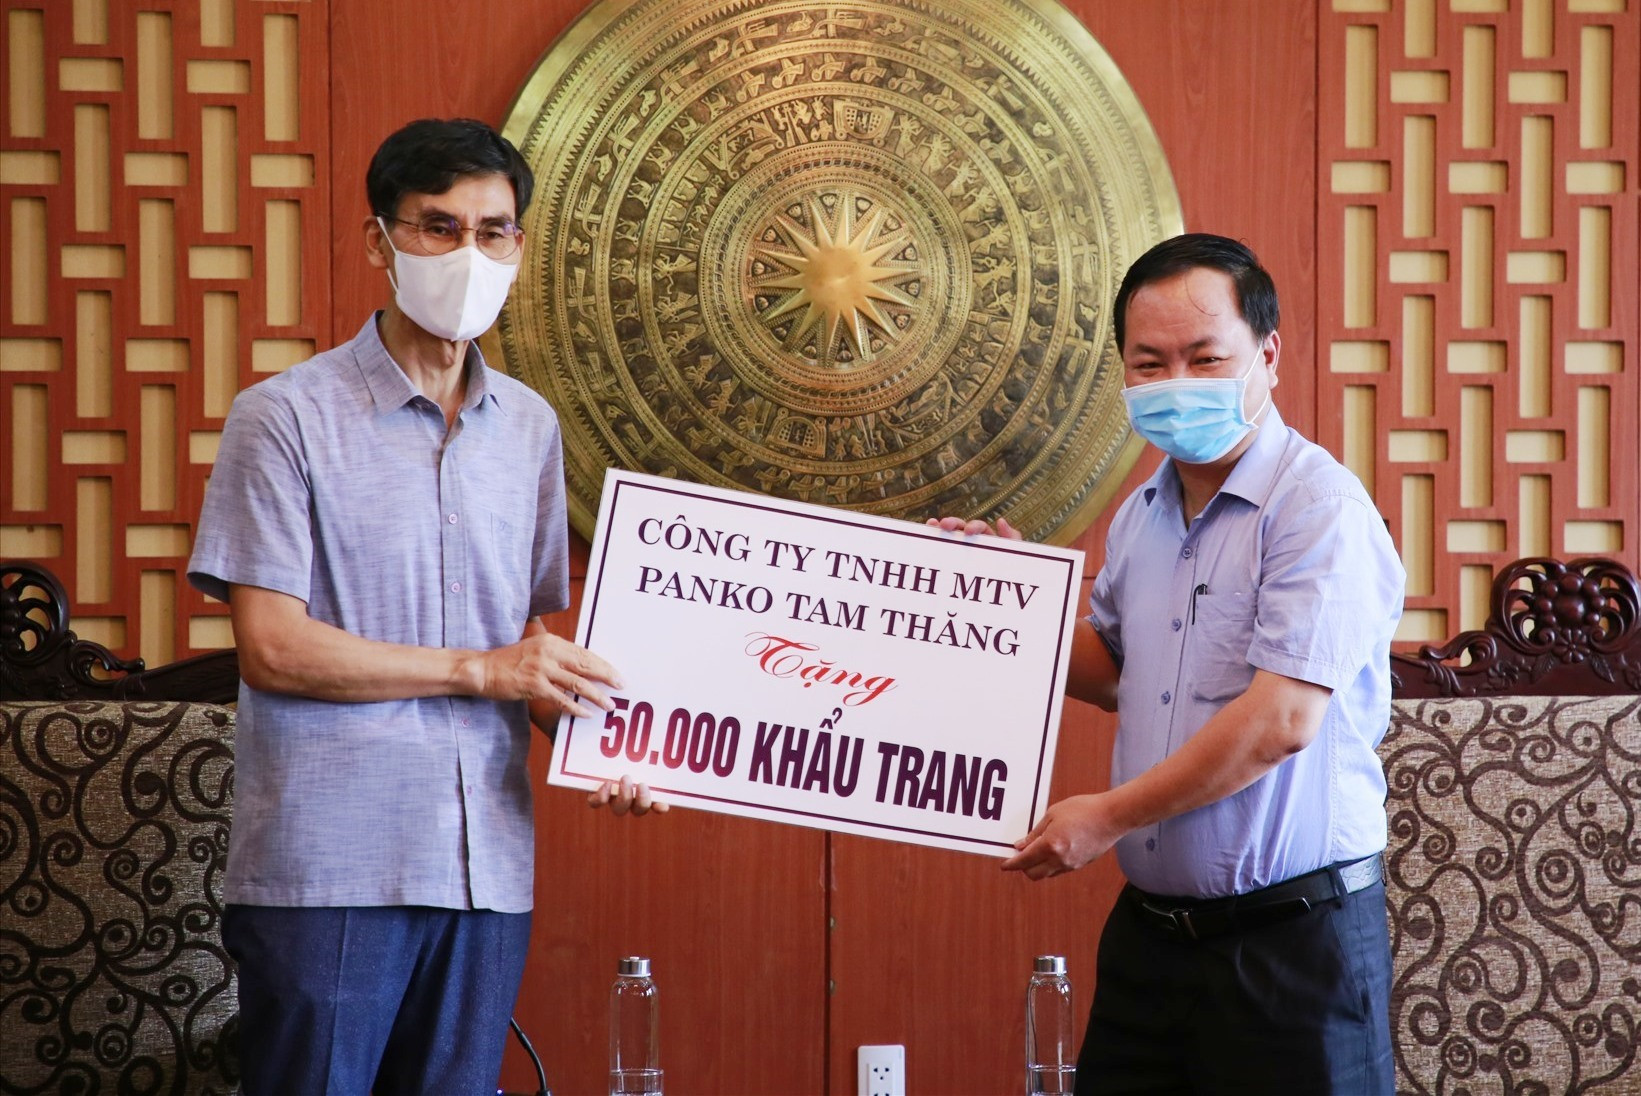 Ông Han Chul Joon - Tổng Giám đốc điều hành Công ty TNHH MTV Panko Tam Thăng tặng 50.000 khẩu trang khử khuẩn cho tỉnh Quảng Nam. Ảnh: T.C